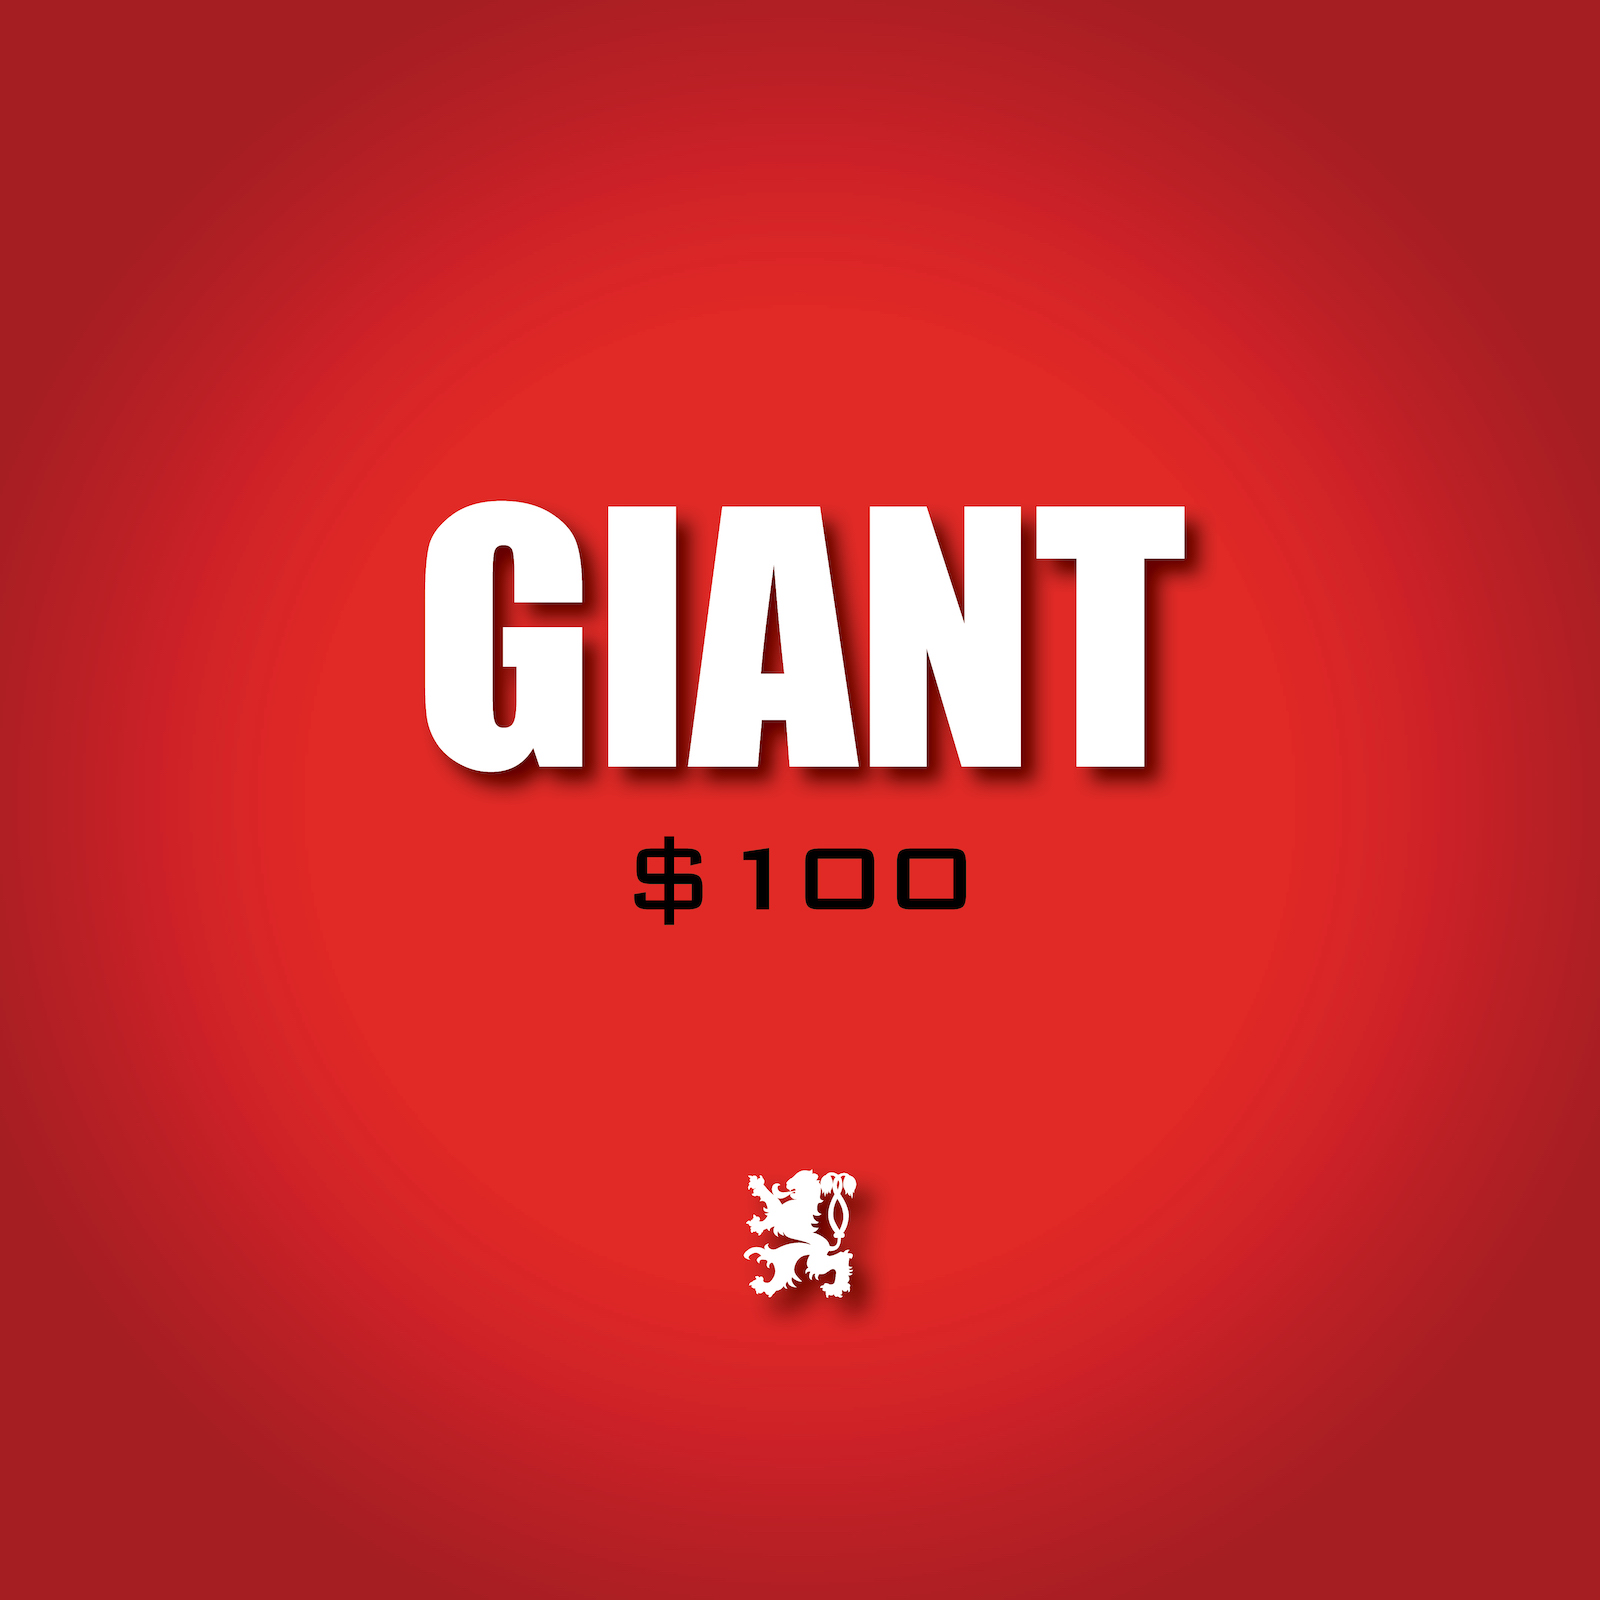 Giant - $100